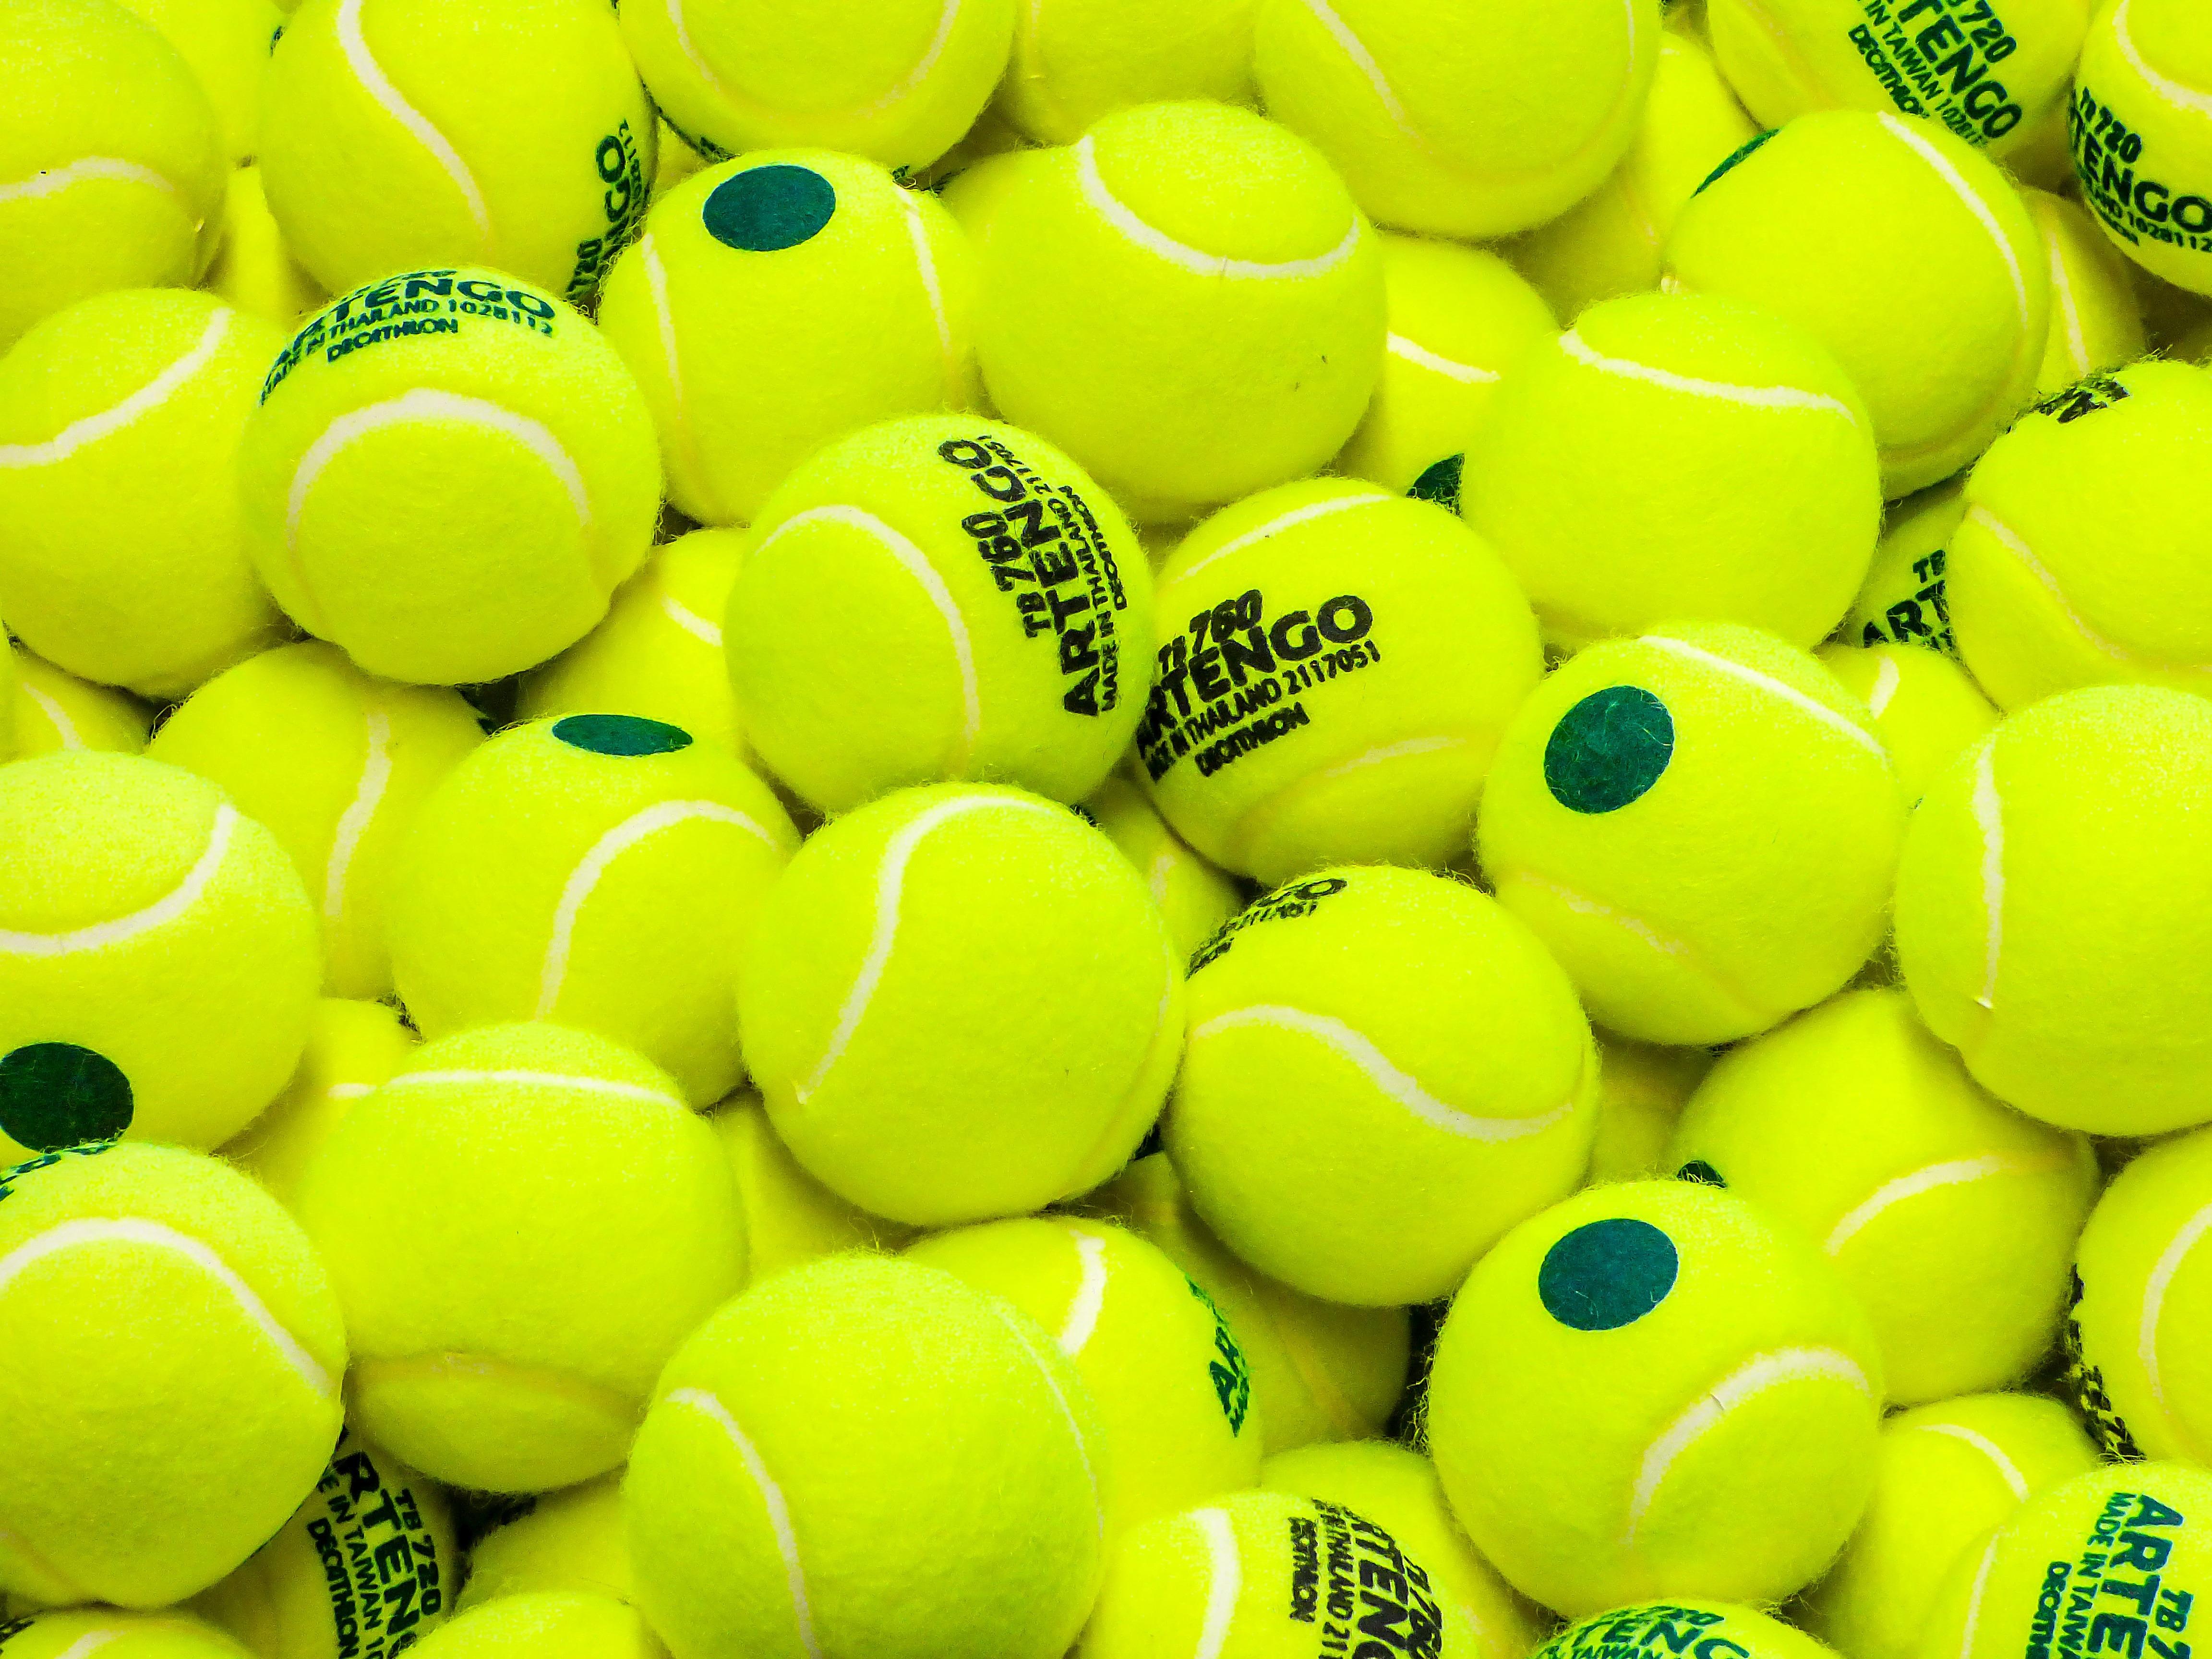 Download wallpaper 4608x3456 tennis, balls, sport, lime green